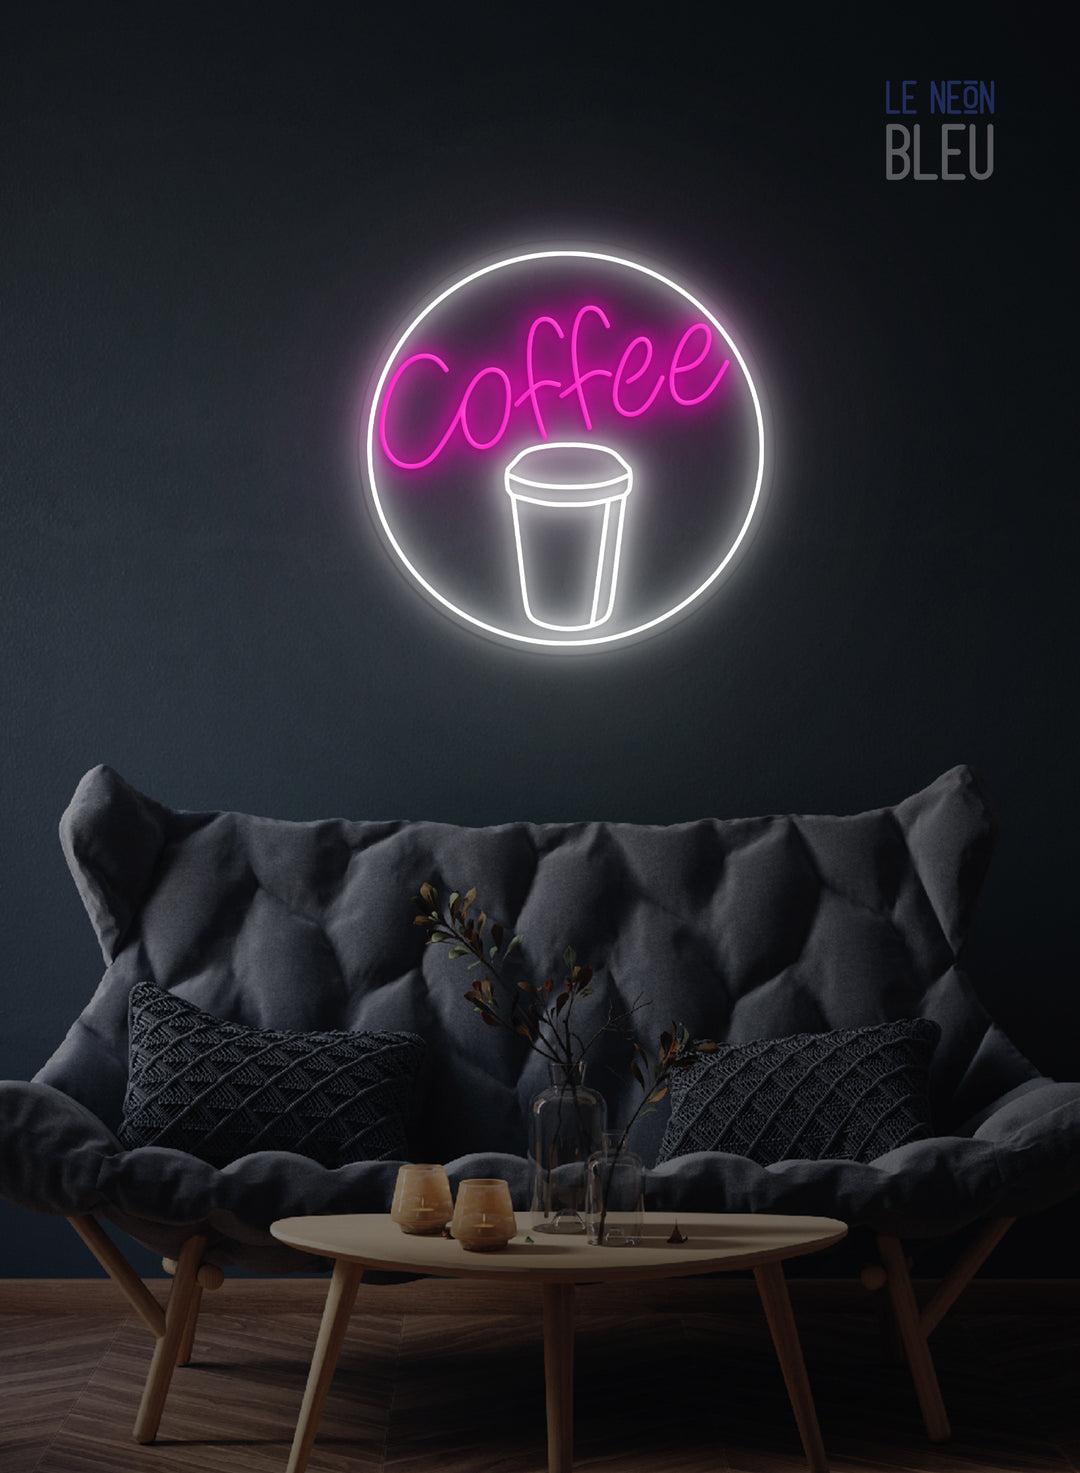 Café ou Coffee - Néon LED